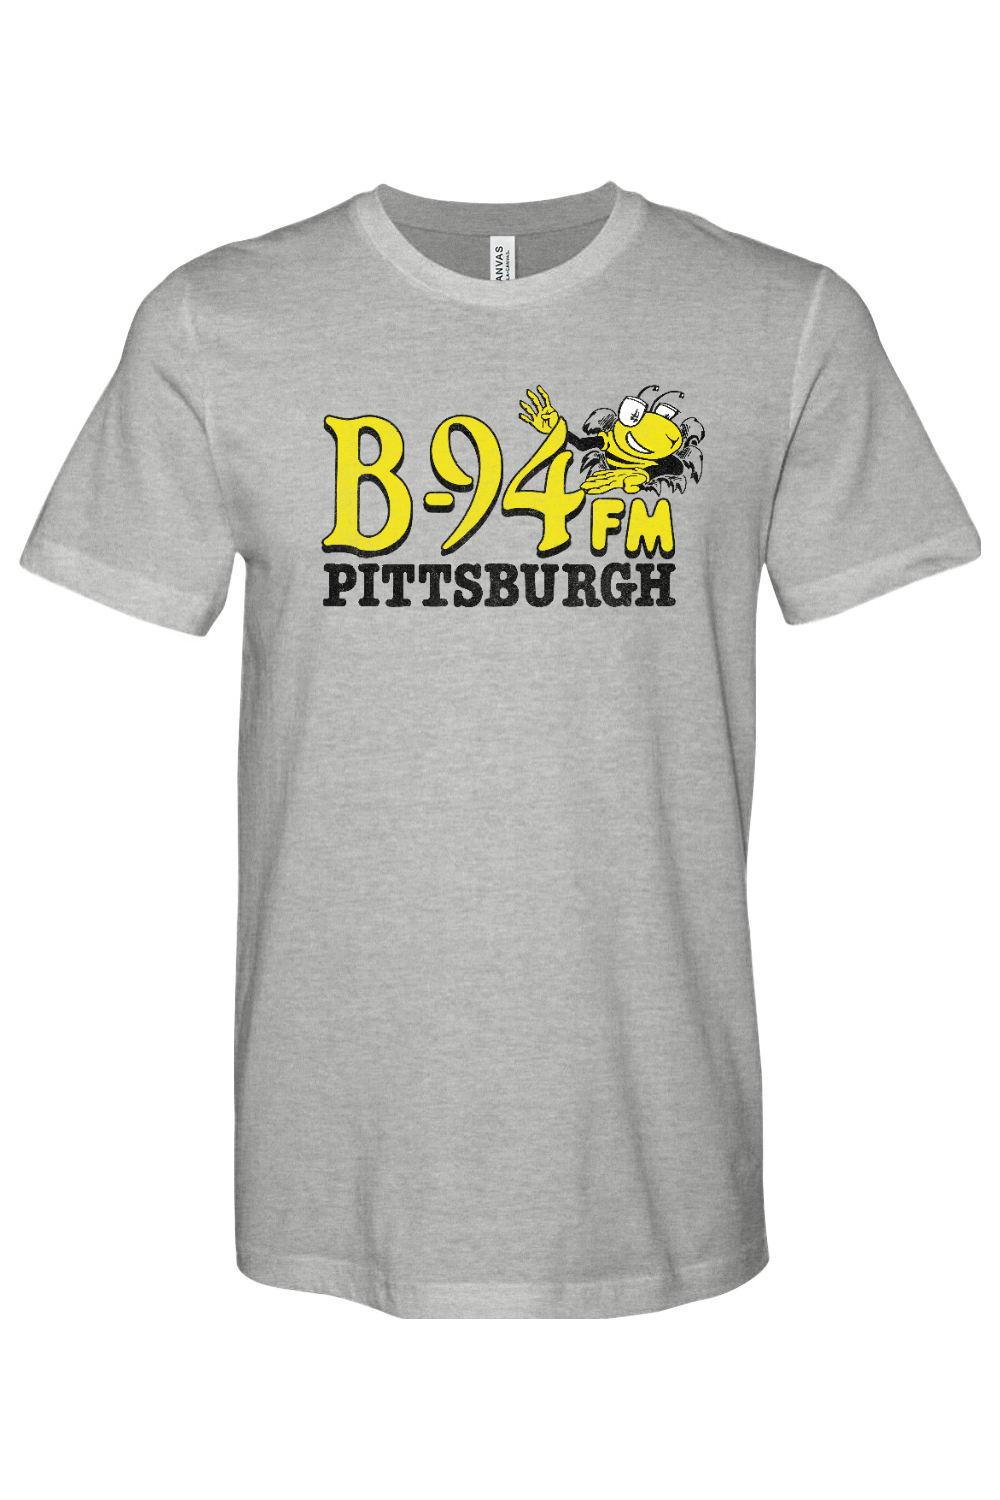 B-94 FM - Pittsburgh - Yinzylvania